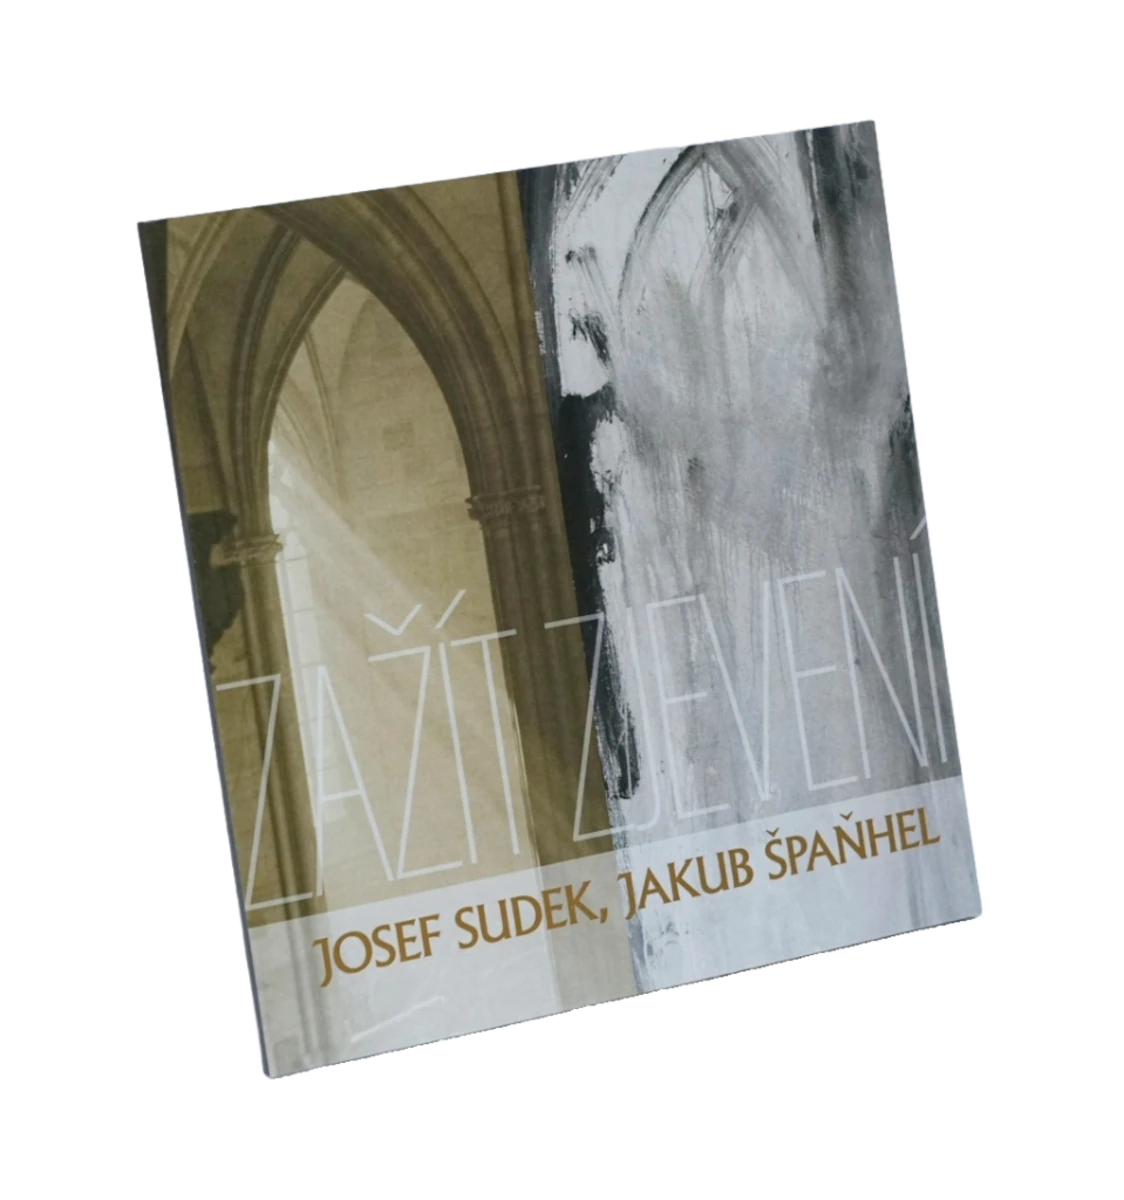 Josef Sudek – Jakub Špaňhel: Zažít zjevení publikace